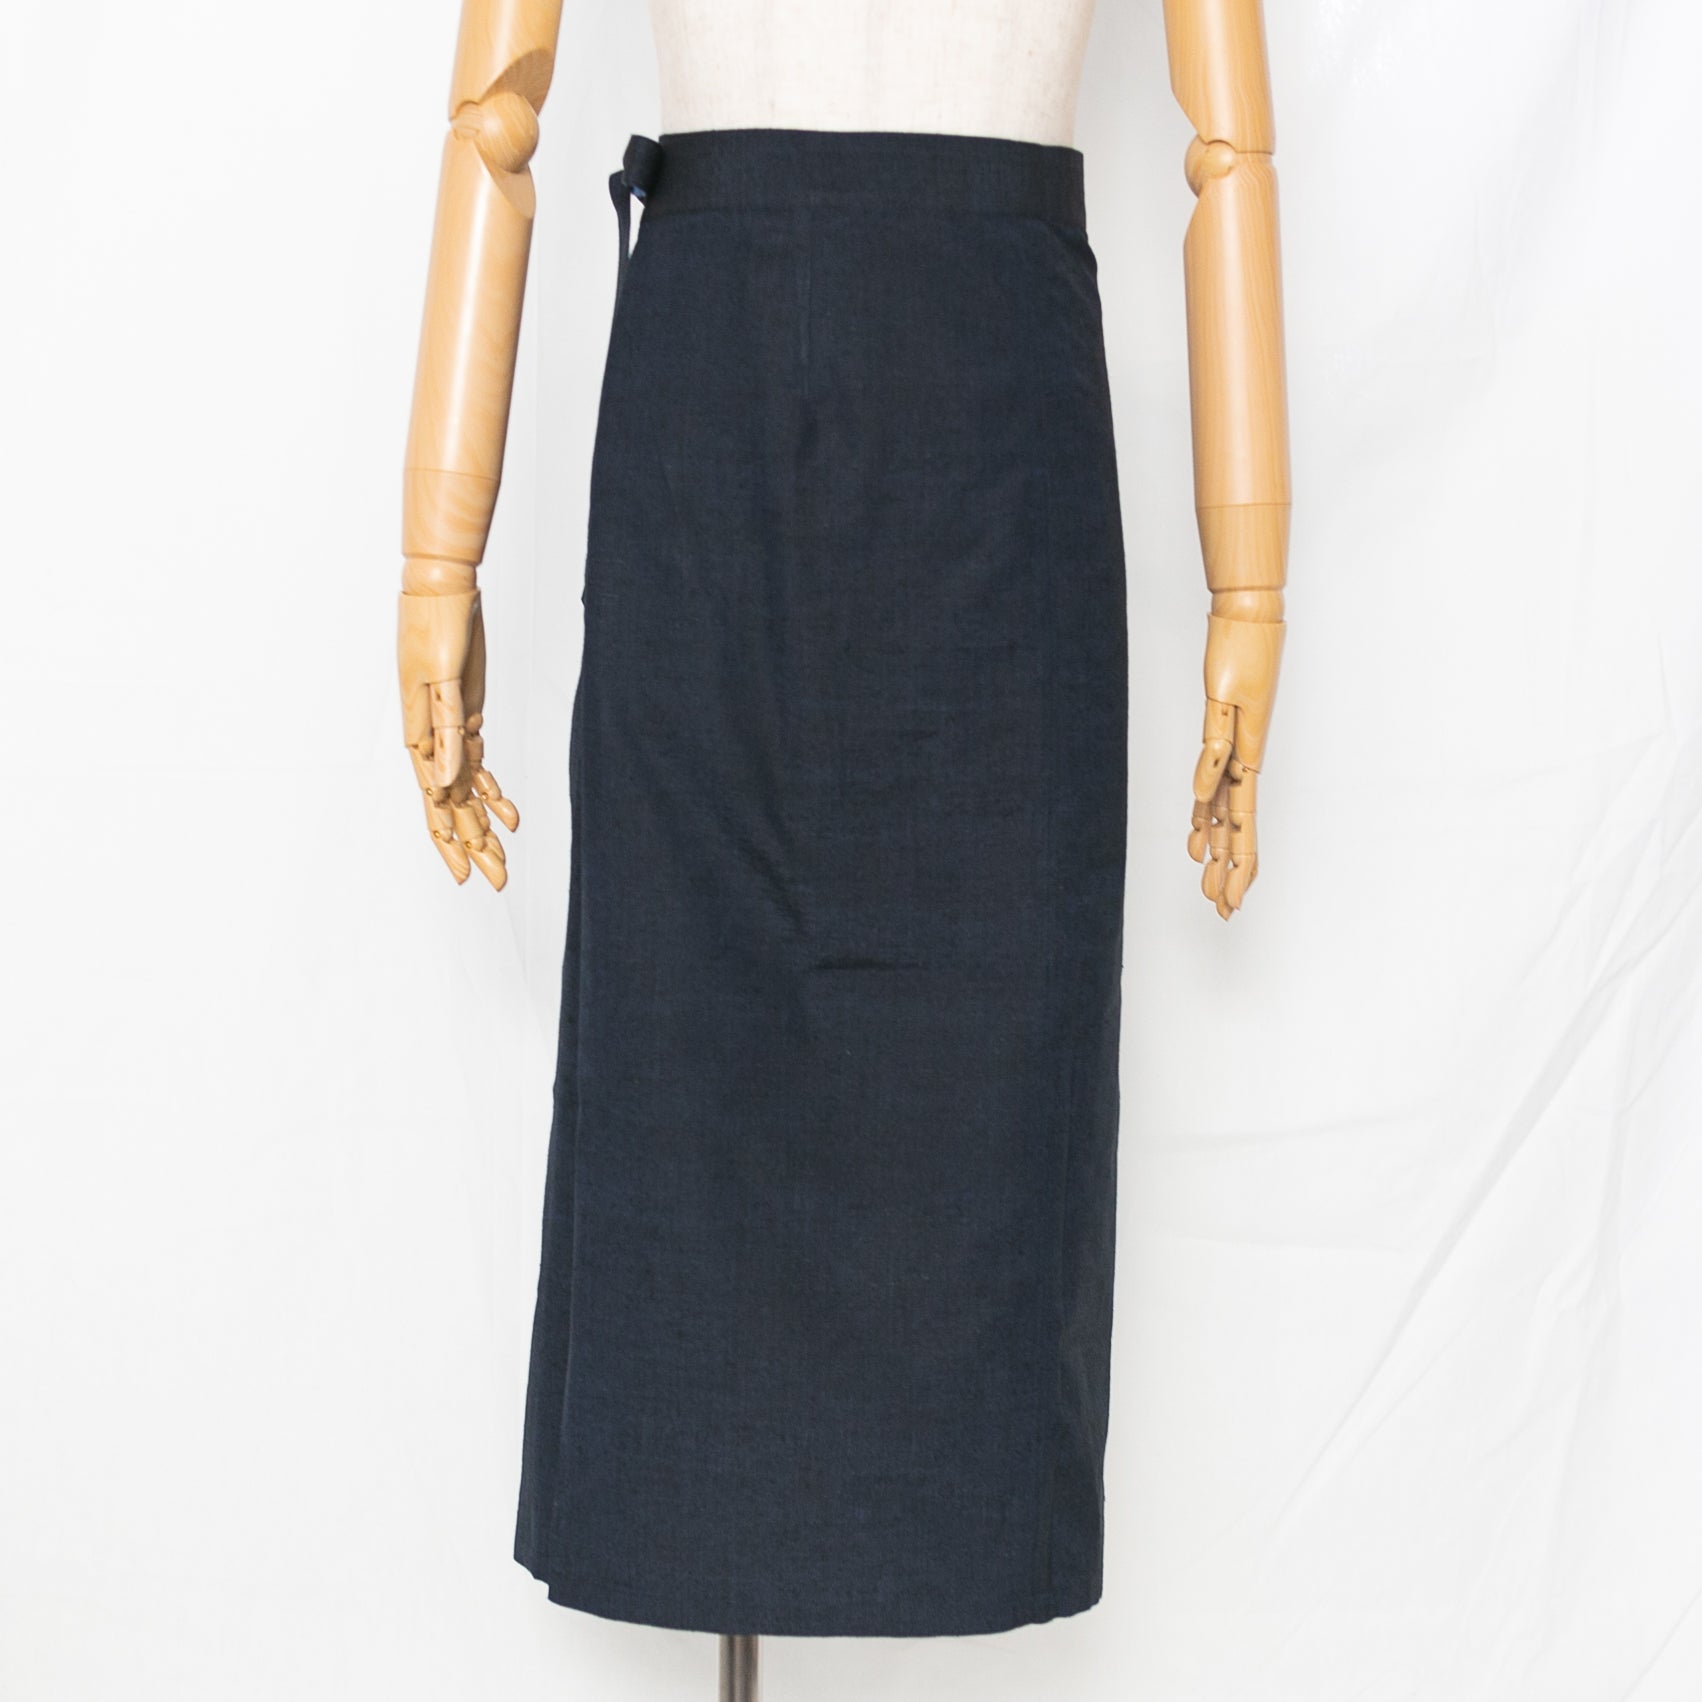 Reversible Skirt Long Straight - Fiori Blu